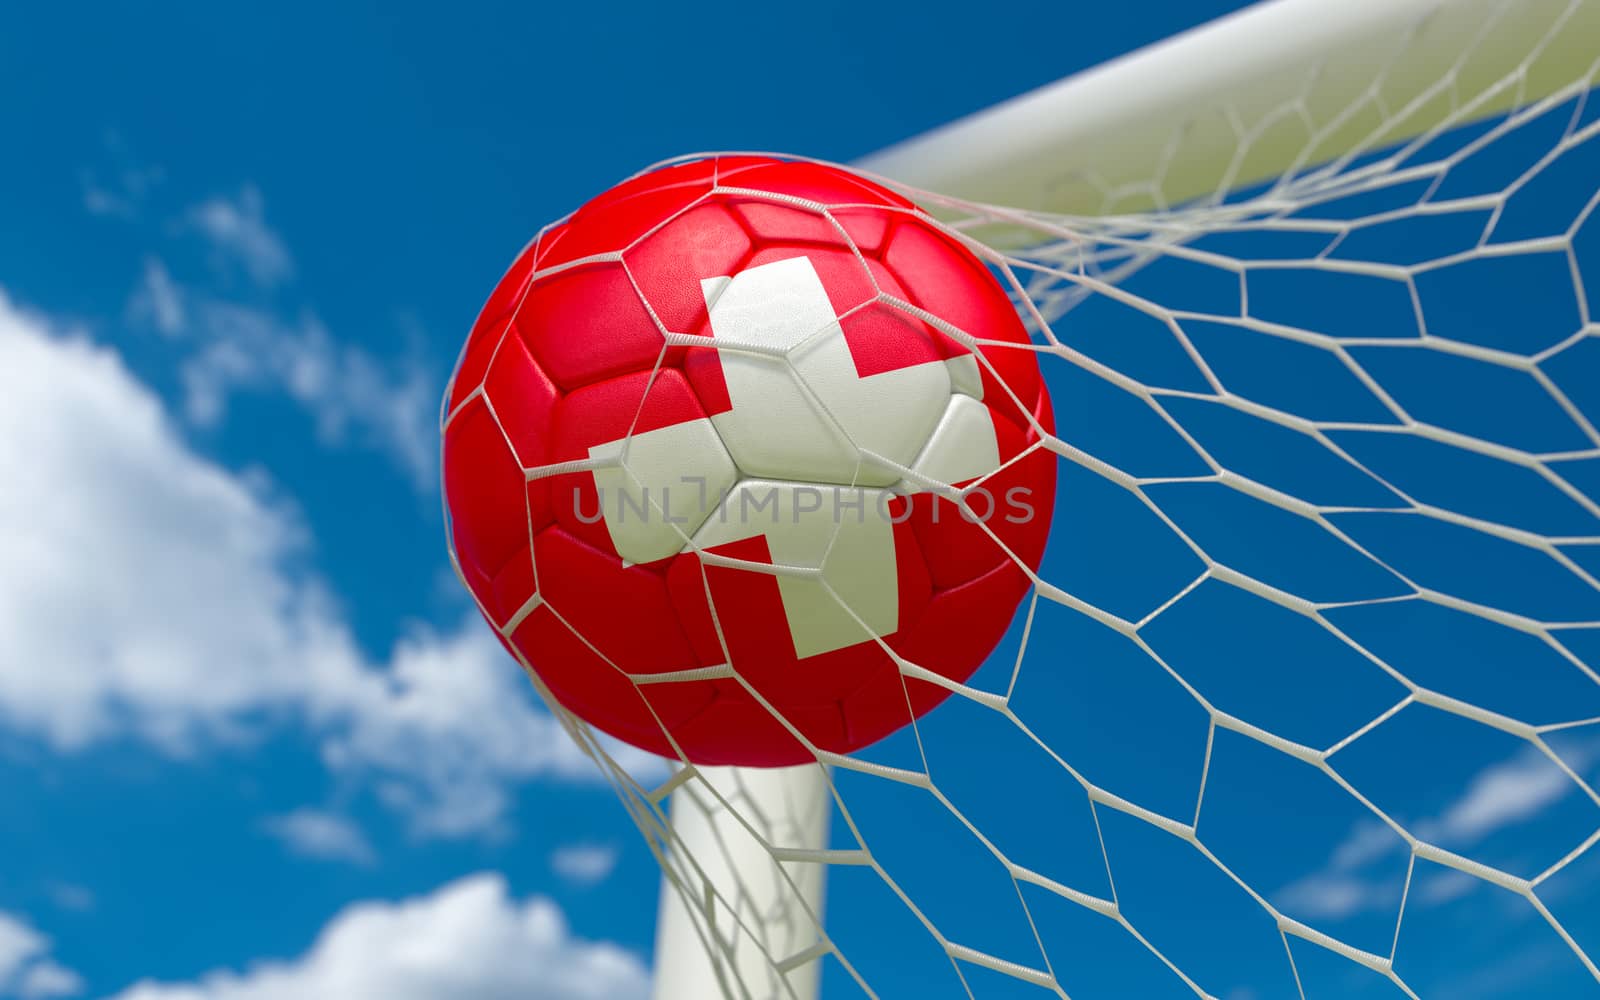 Switzerland flag and soccer ball in goal net by Barbraford